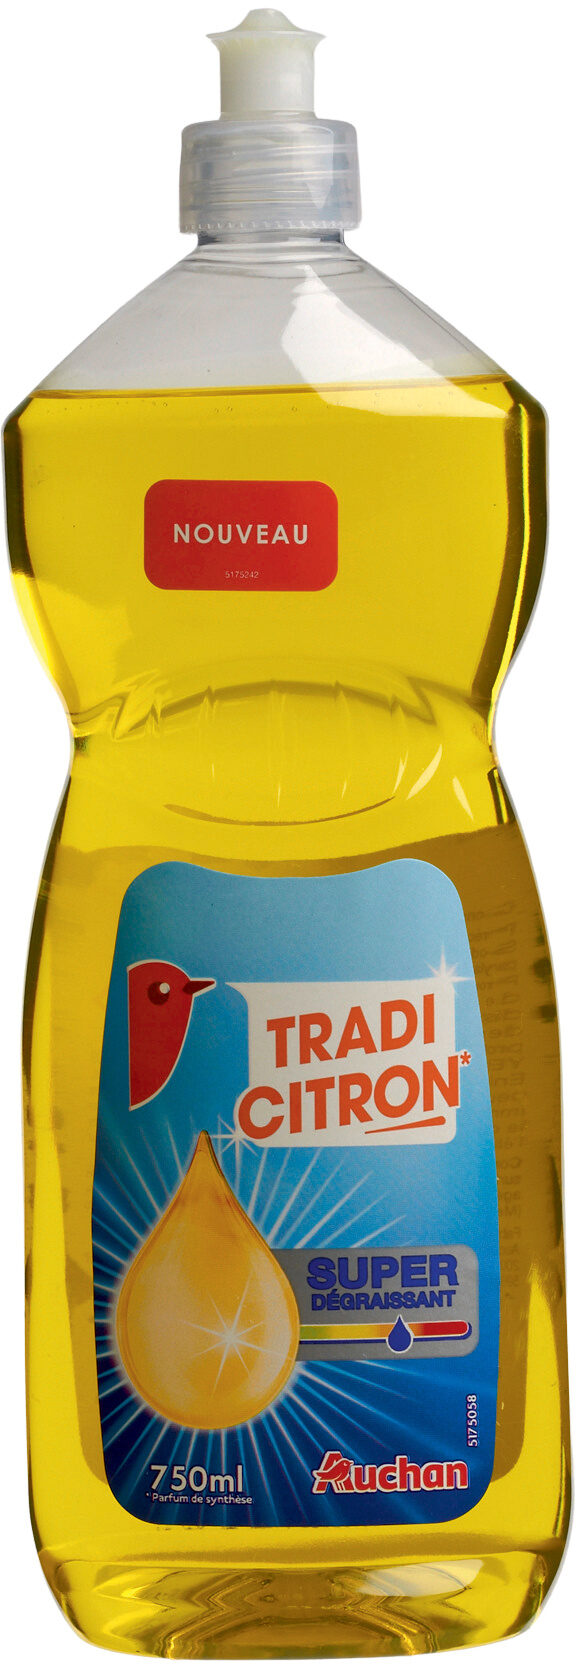 Auchan liquide vaisselle classique citron 750 ml - Product - fr